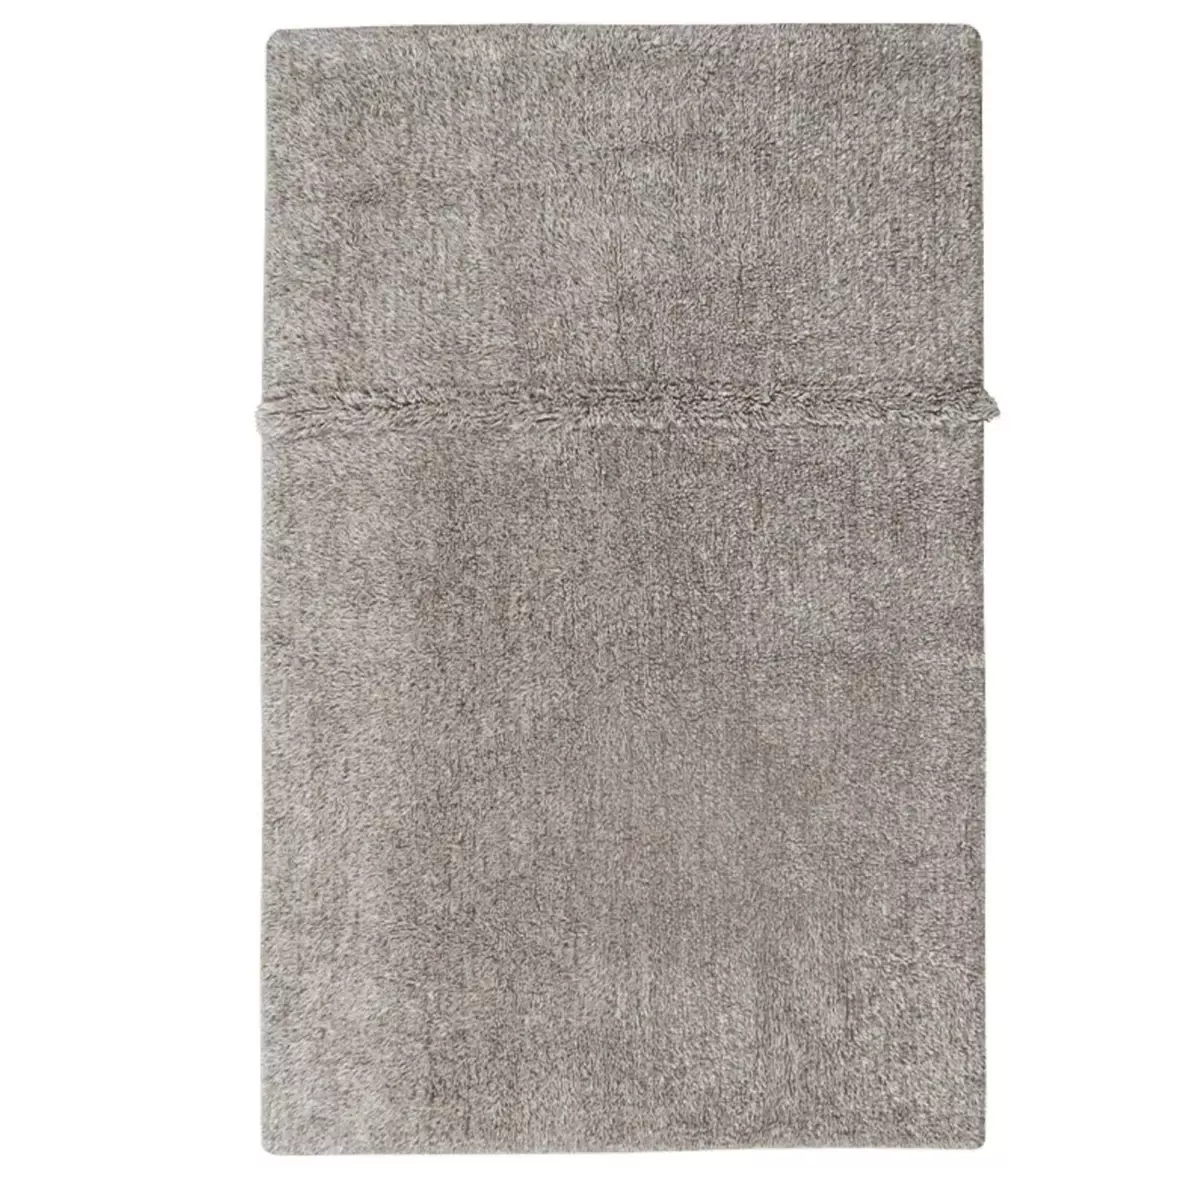 Lorena Canals Tapis contemporain en laine gris chiné - 80 x 140 cm